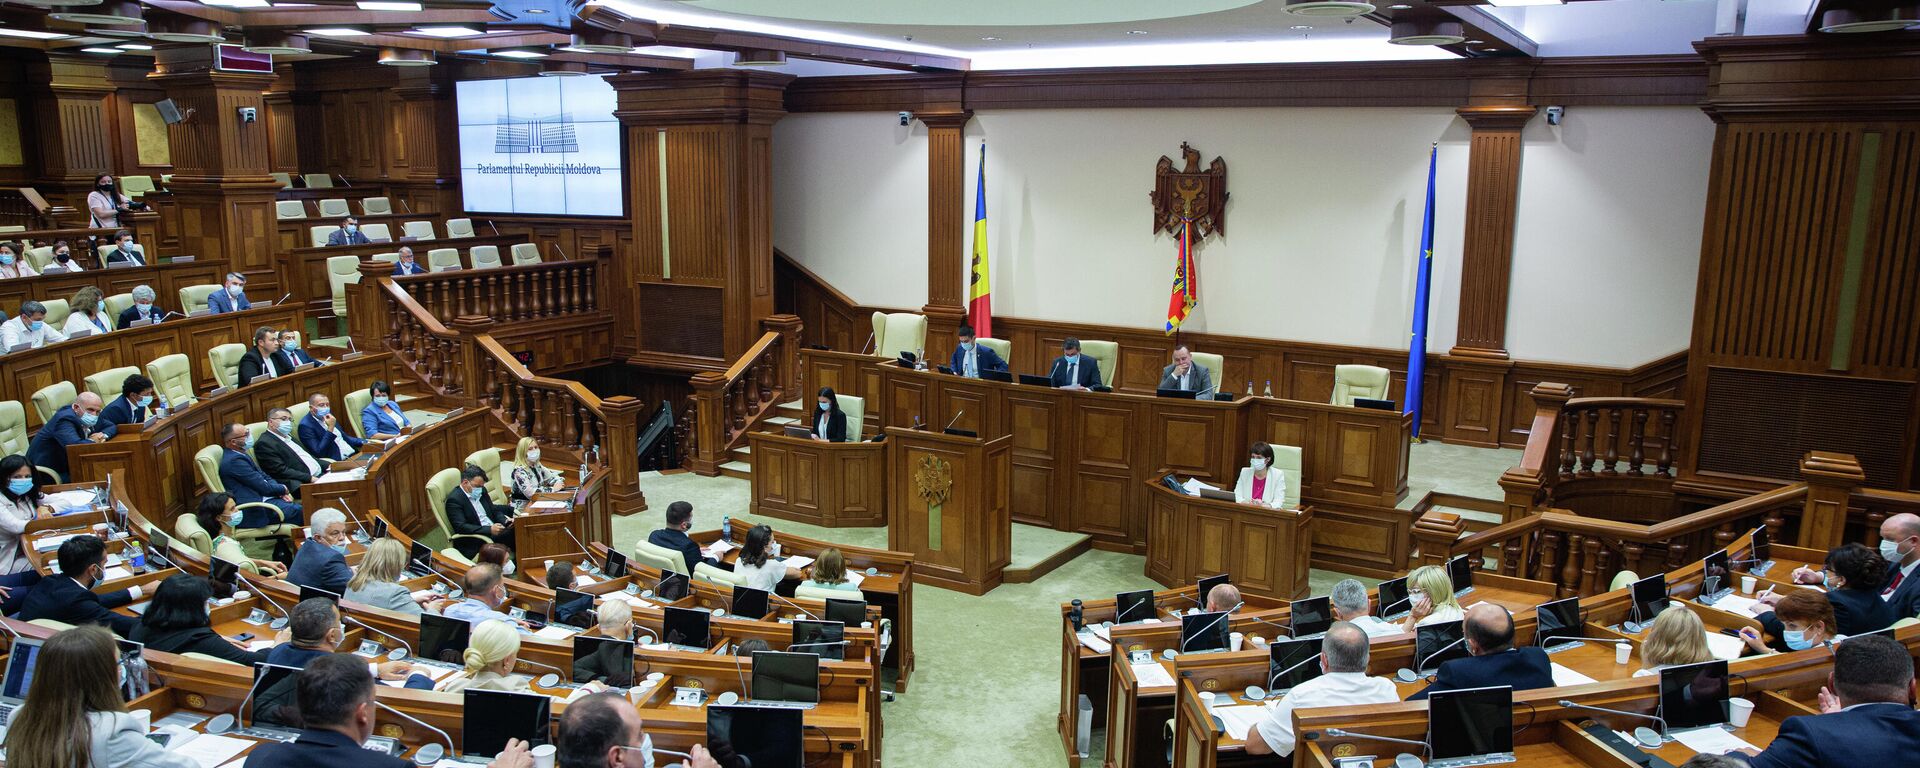 Deputați în Parlamentul Republicii Moldova  - Sputnik Молдова, 1920, 24.08.2021